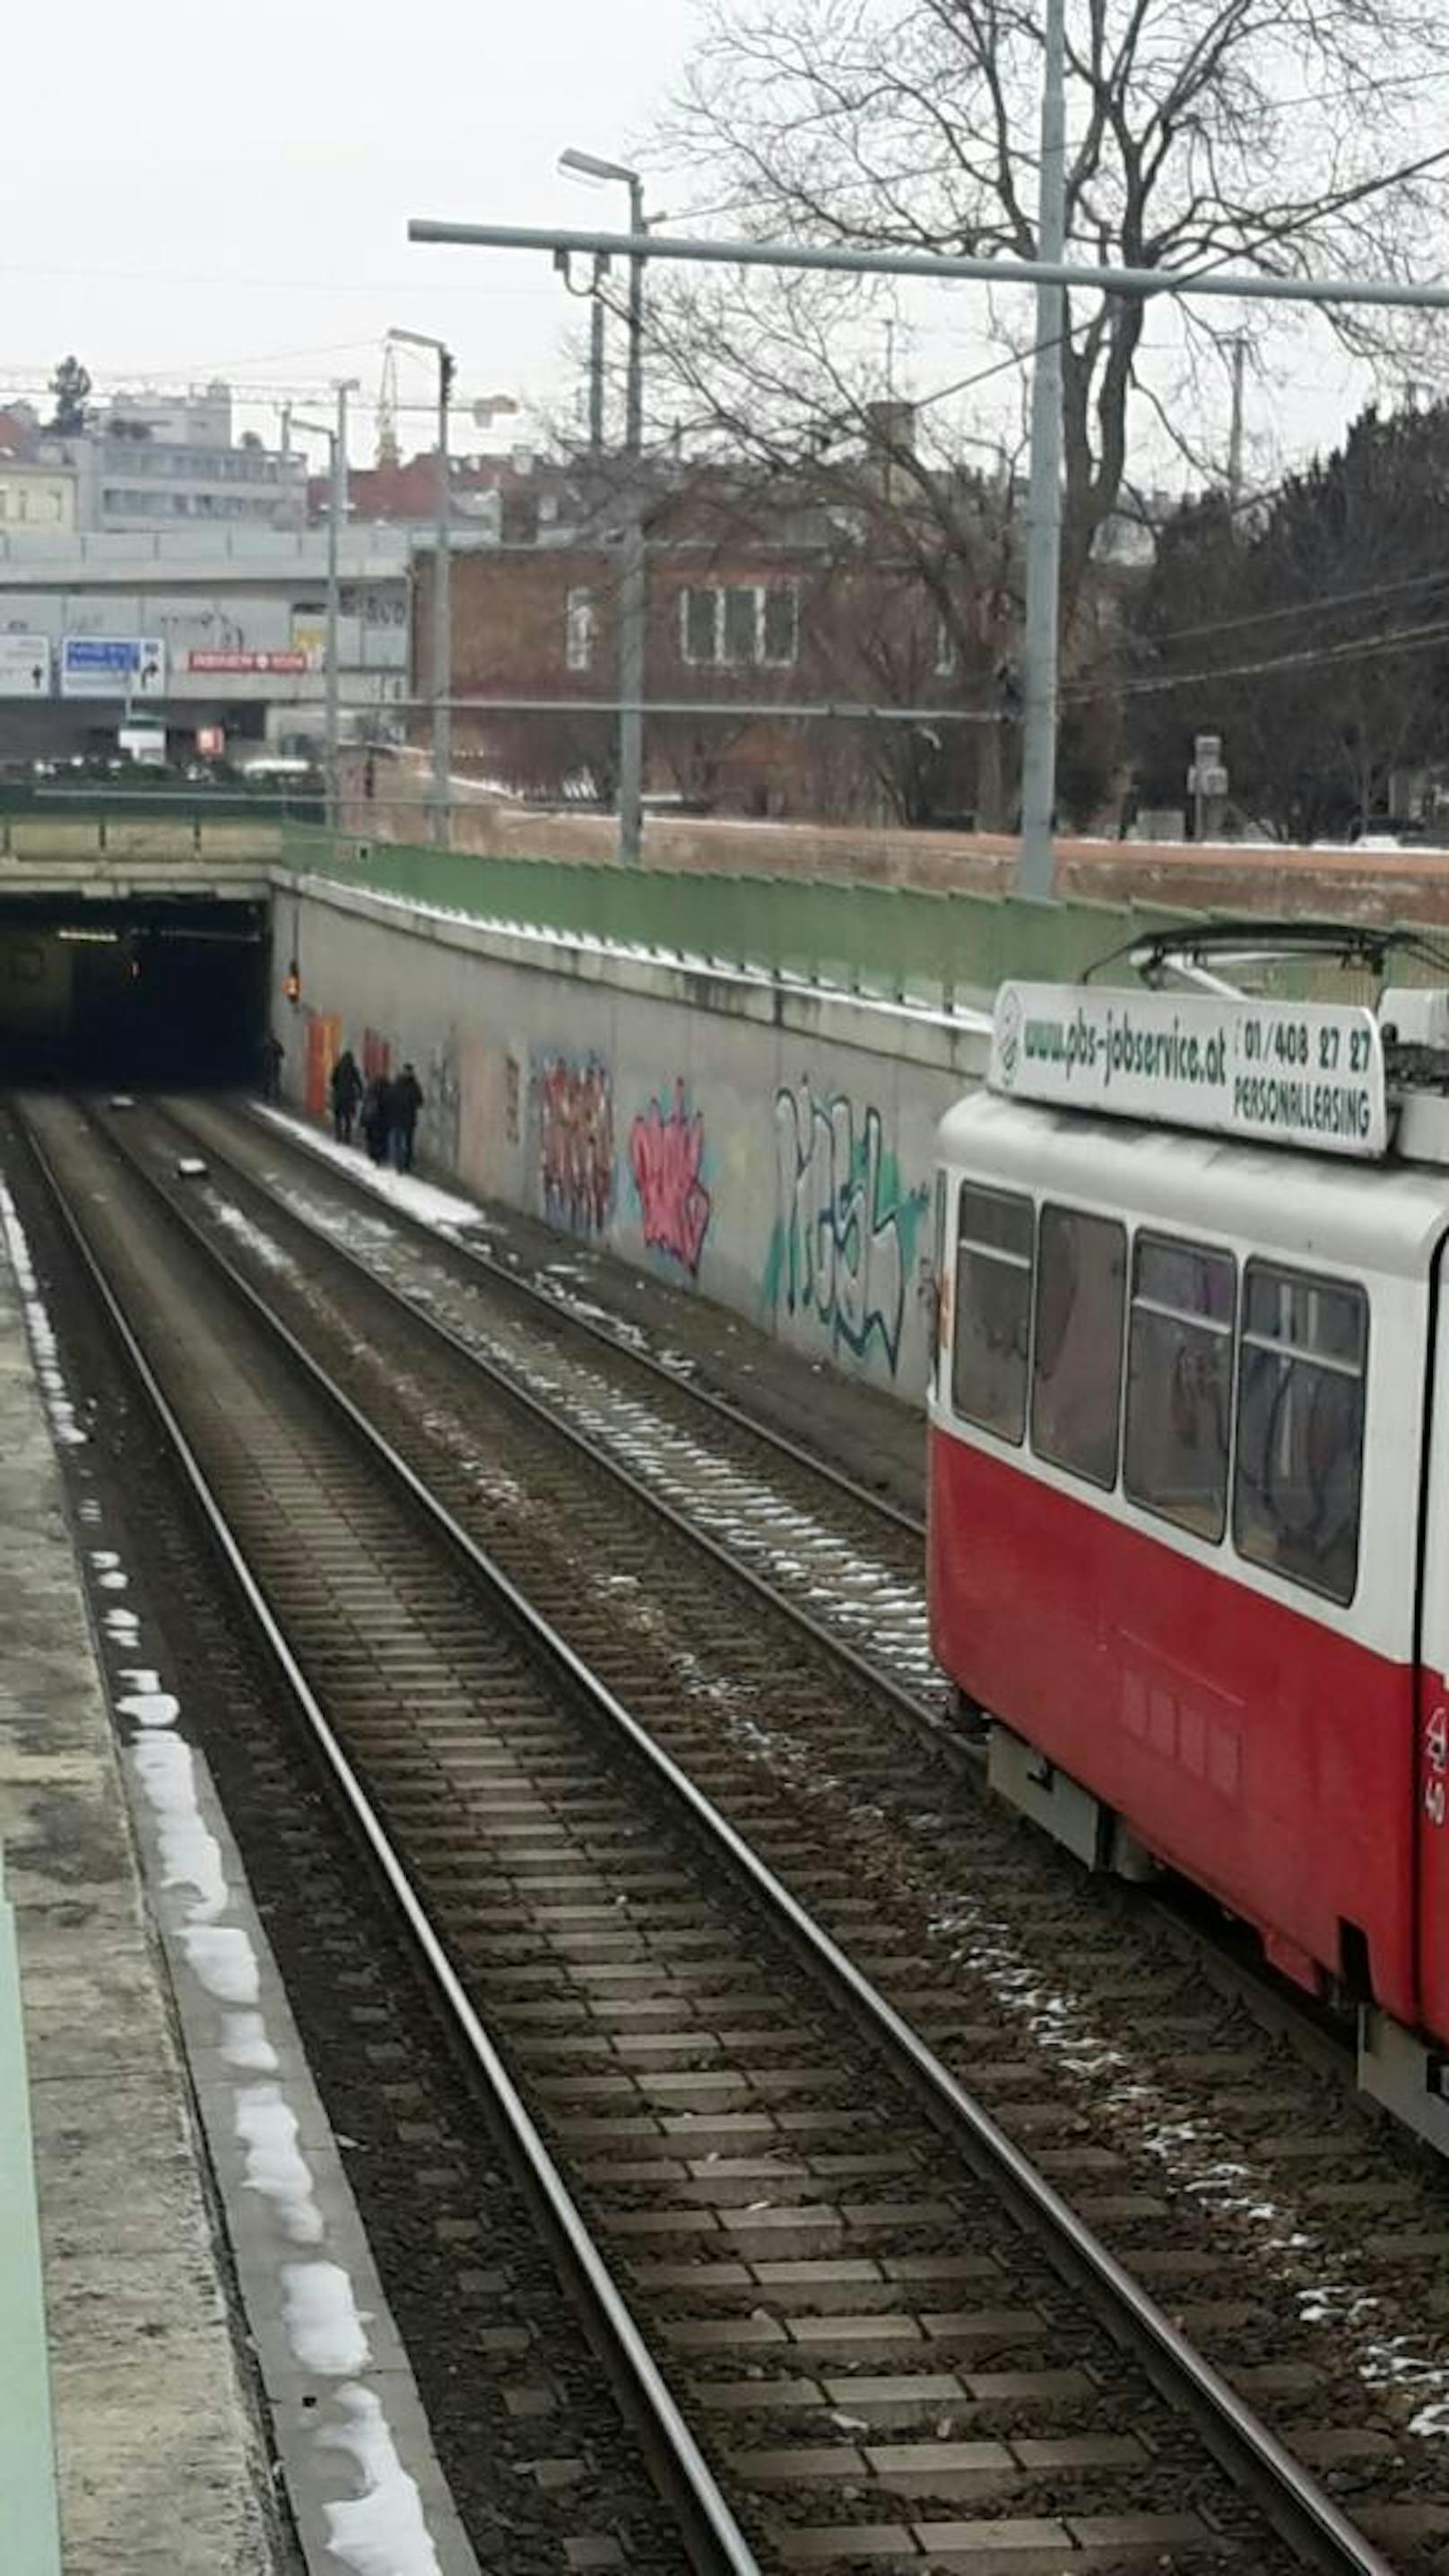 Am Donnerstag Nachmittag standen wegen einer Stromstörung viele Wiener Straßenbahnlinien still. Passagiere mussten eine Garnitur beim Matzleinsorfer Platz verlassen und zu Fuß durch den Tunnel in die Haltestelle gehen.